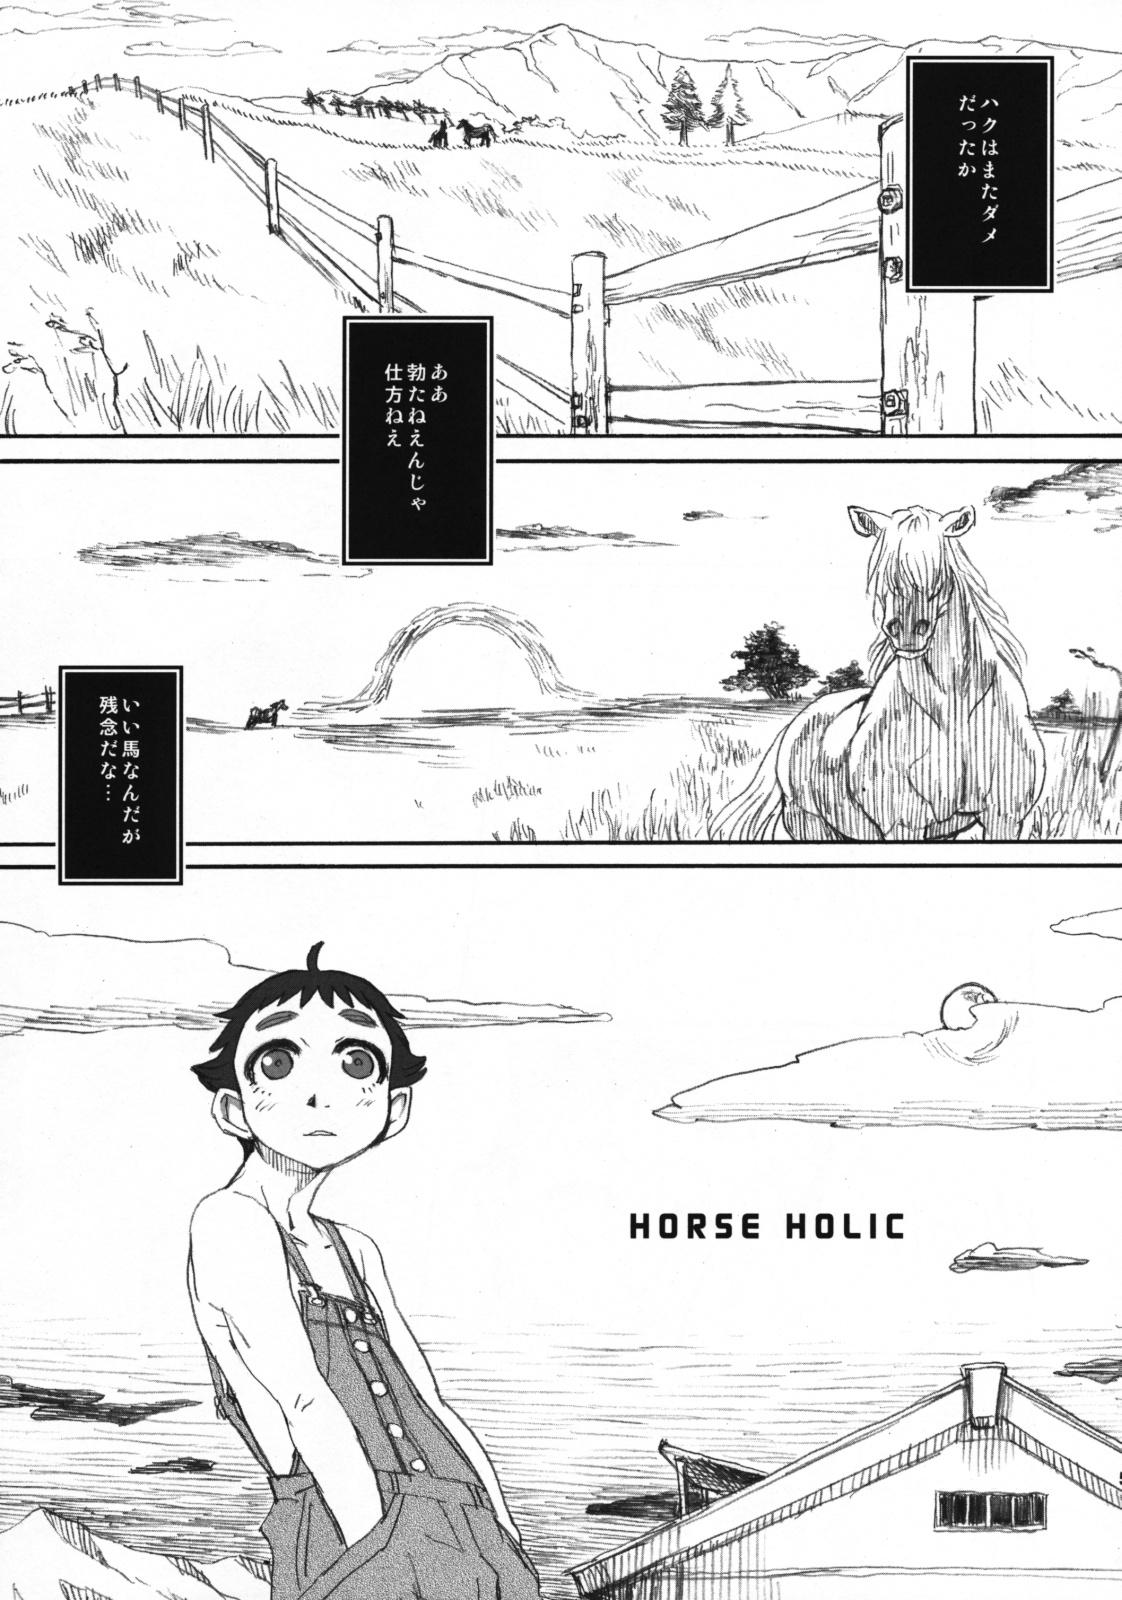 Horse Holic 4